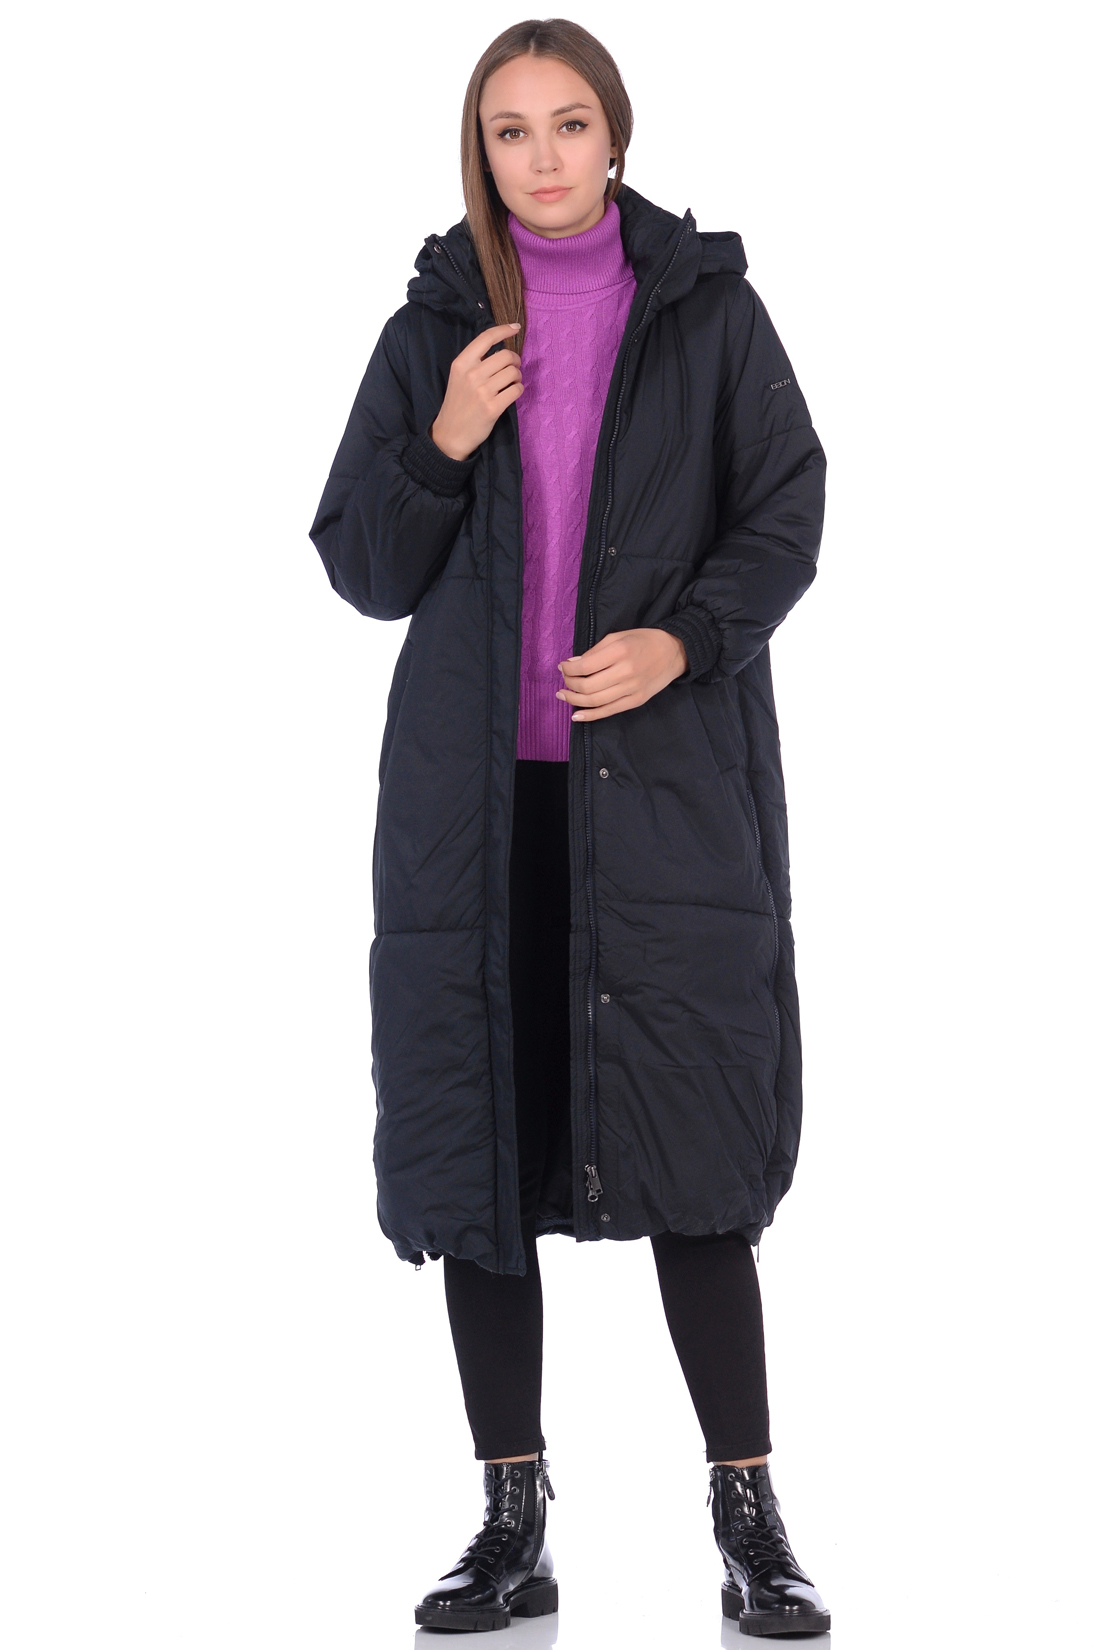 Куртка с молниями по бокам (арт. baon B038530), размер L, цвет черный Куртка с молниями по бокам (арт. baon B038530) - фото 1